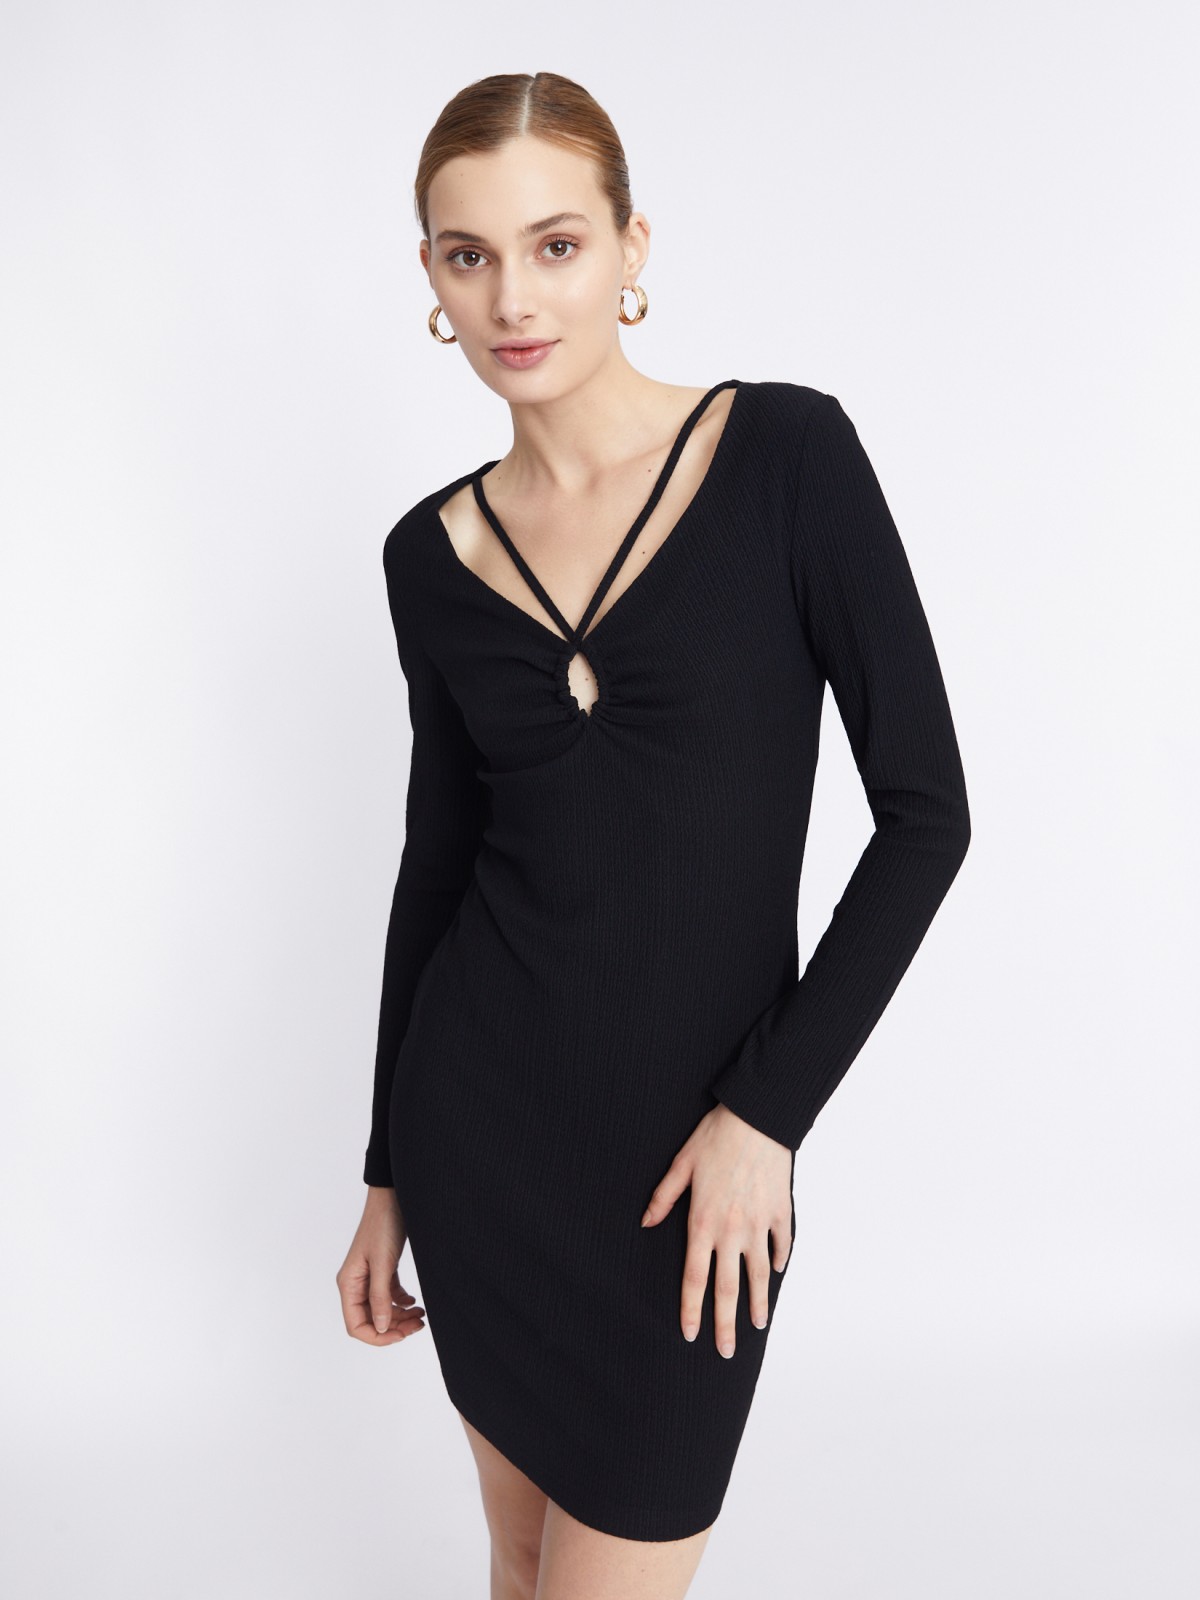 Трикотажное платье длины мини с акцентным вырезом zolla 223338159151, цвет черный, размер XS - фото 1